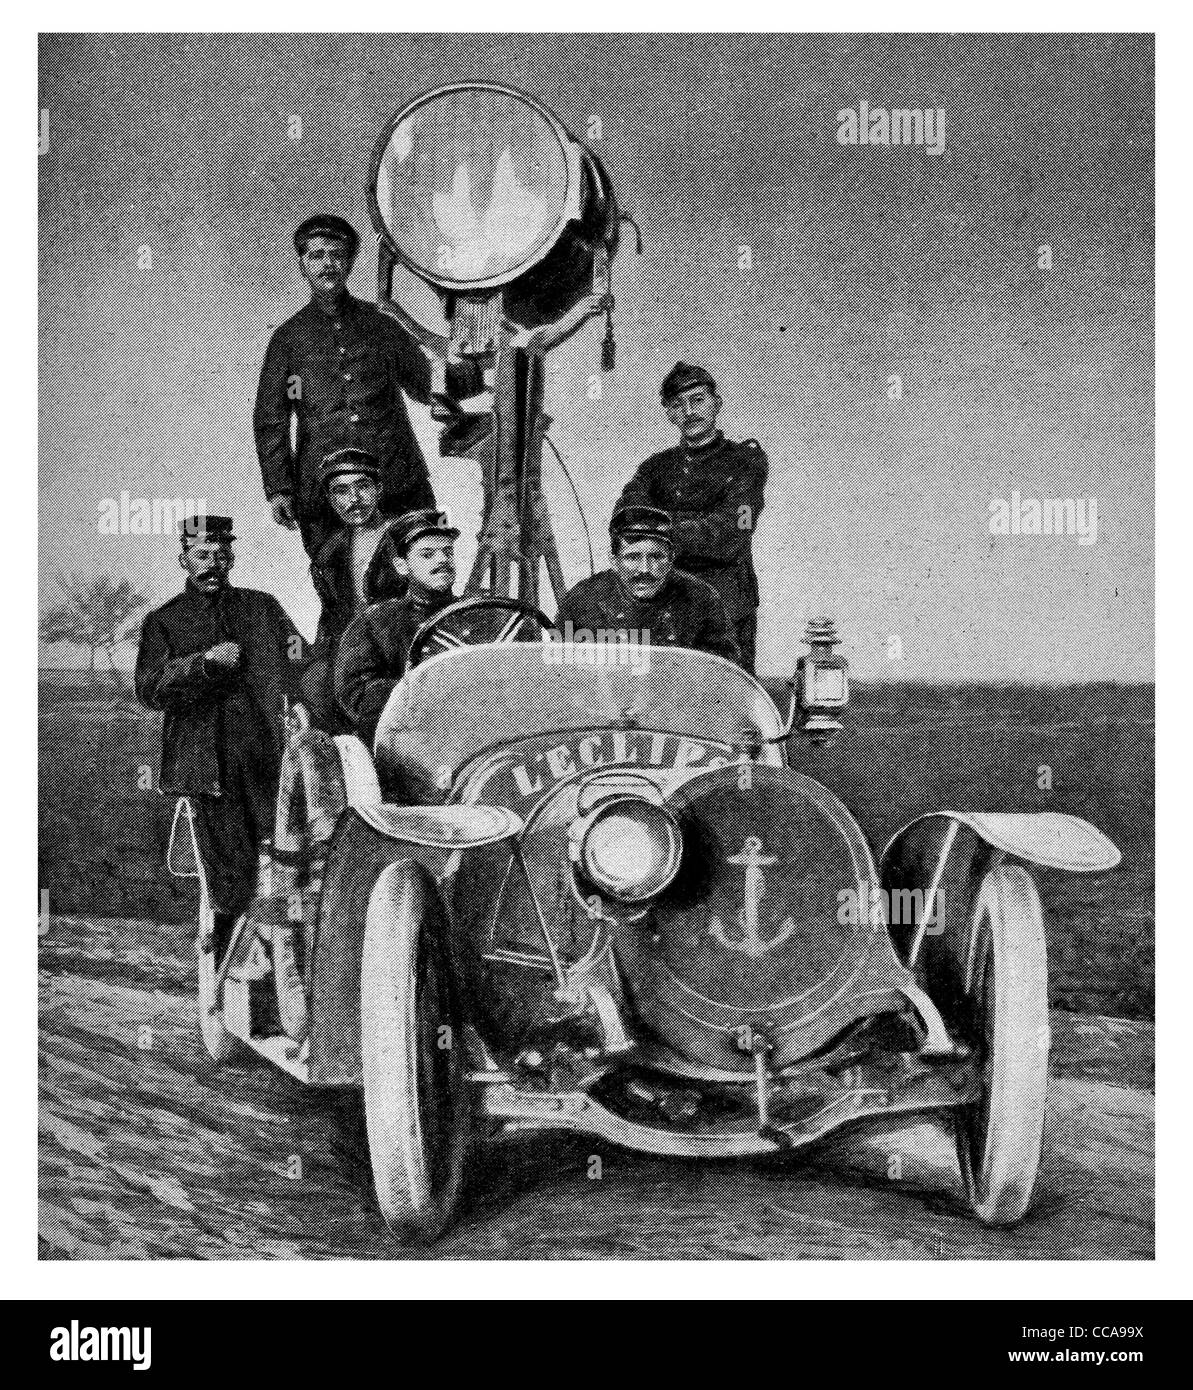 1915 La guerra noche searchlight fuego de artillería ligera vehículo ancla conductor del coche de carretera scout raid Foto de stock